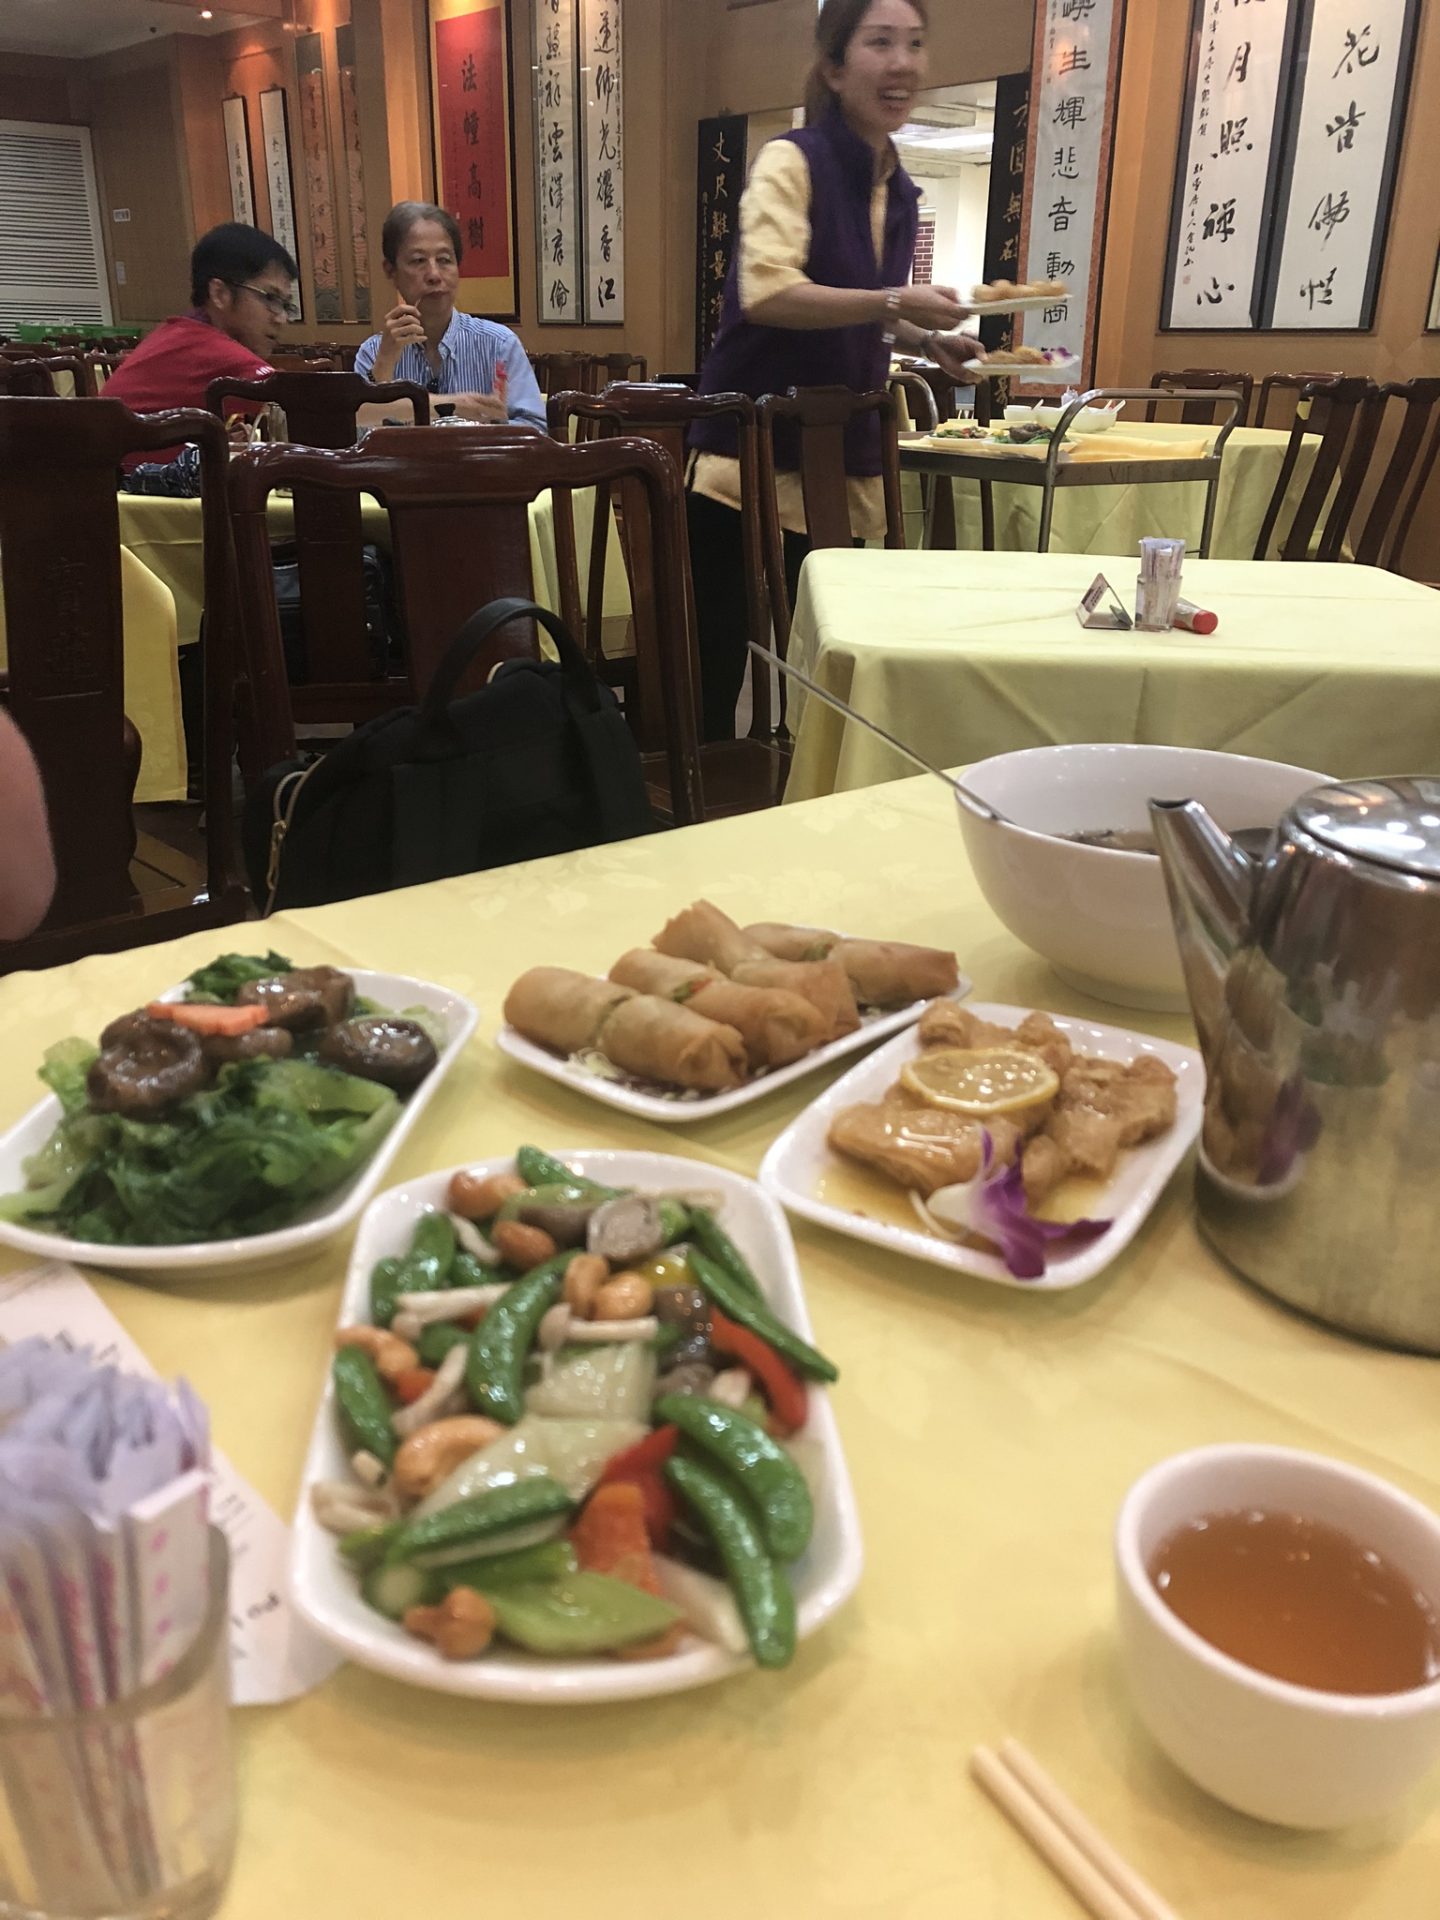 Po Lin Monastery vegetarian restaurant